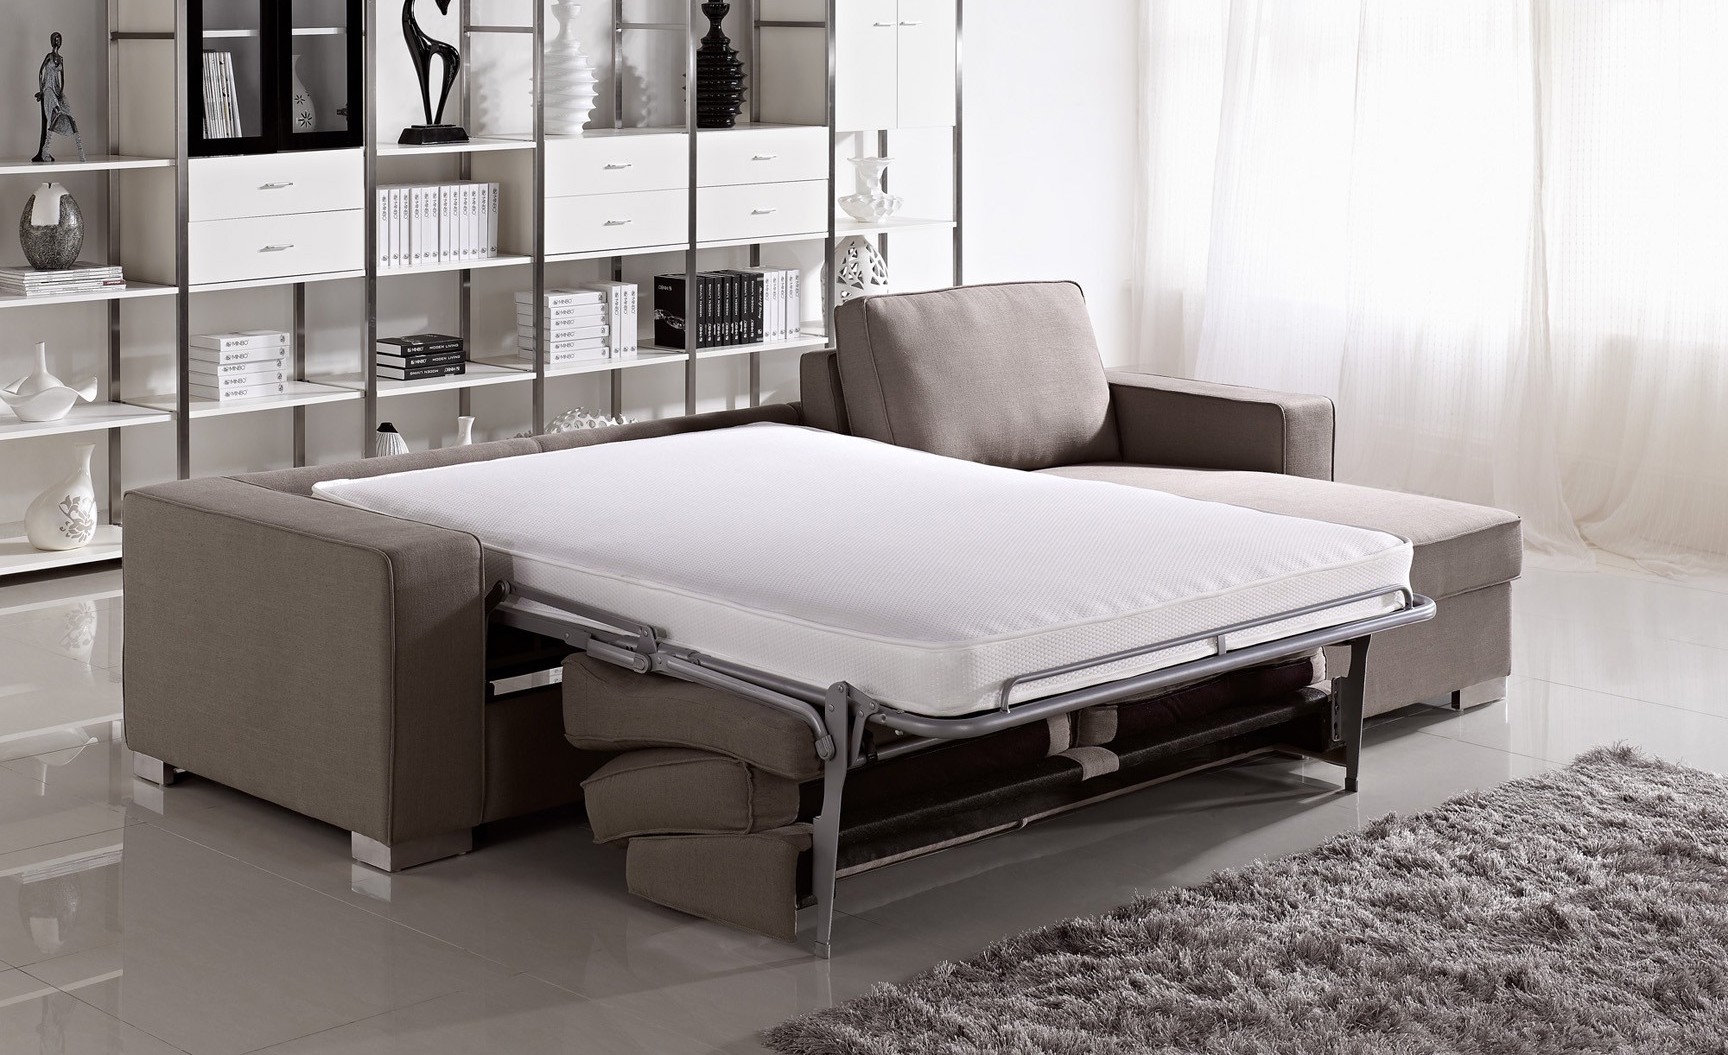 Ортопедический диван-кровать Garbo